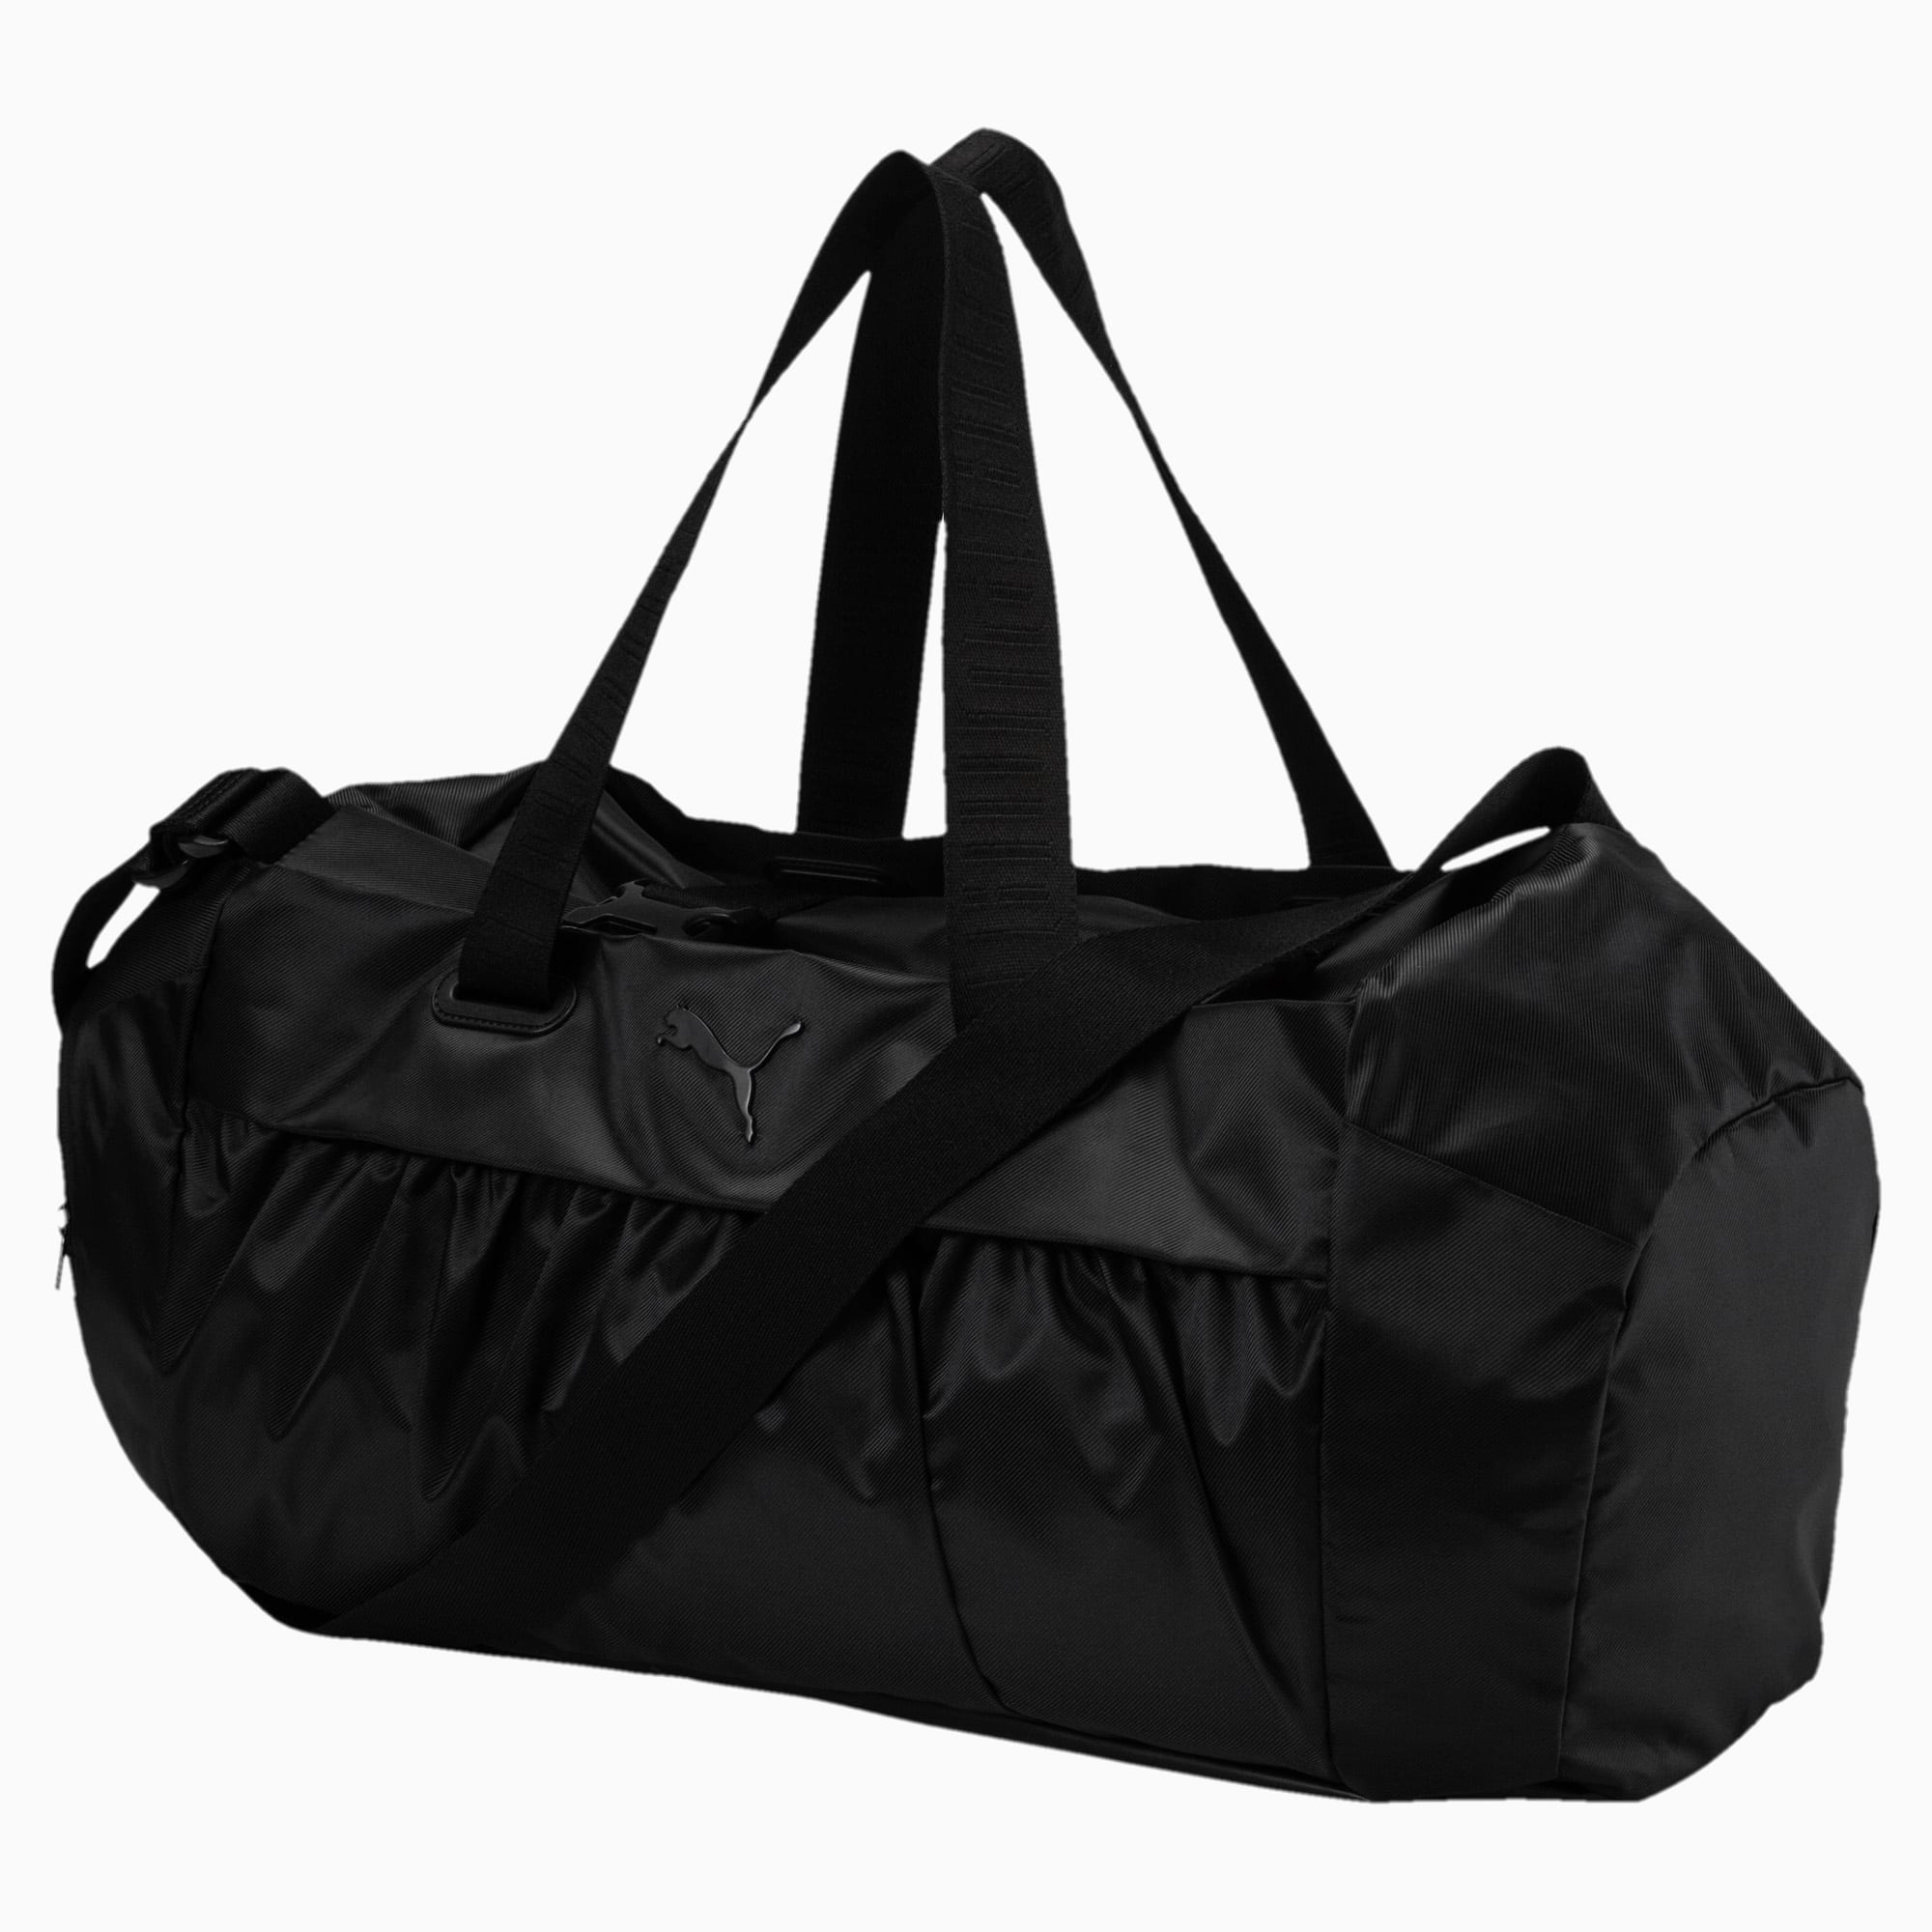 Training Women's Sports Duffle Bag 